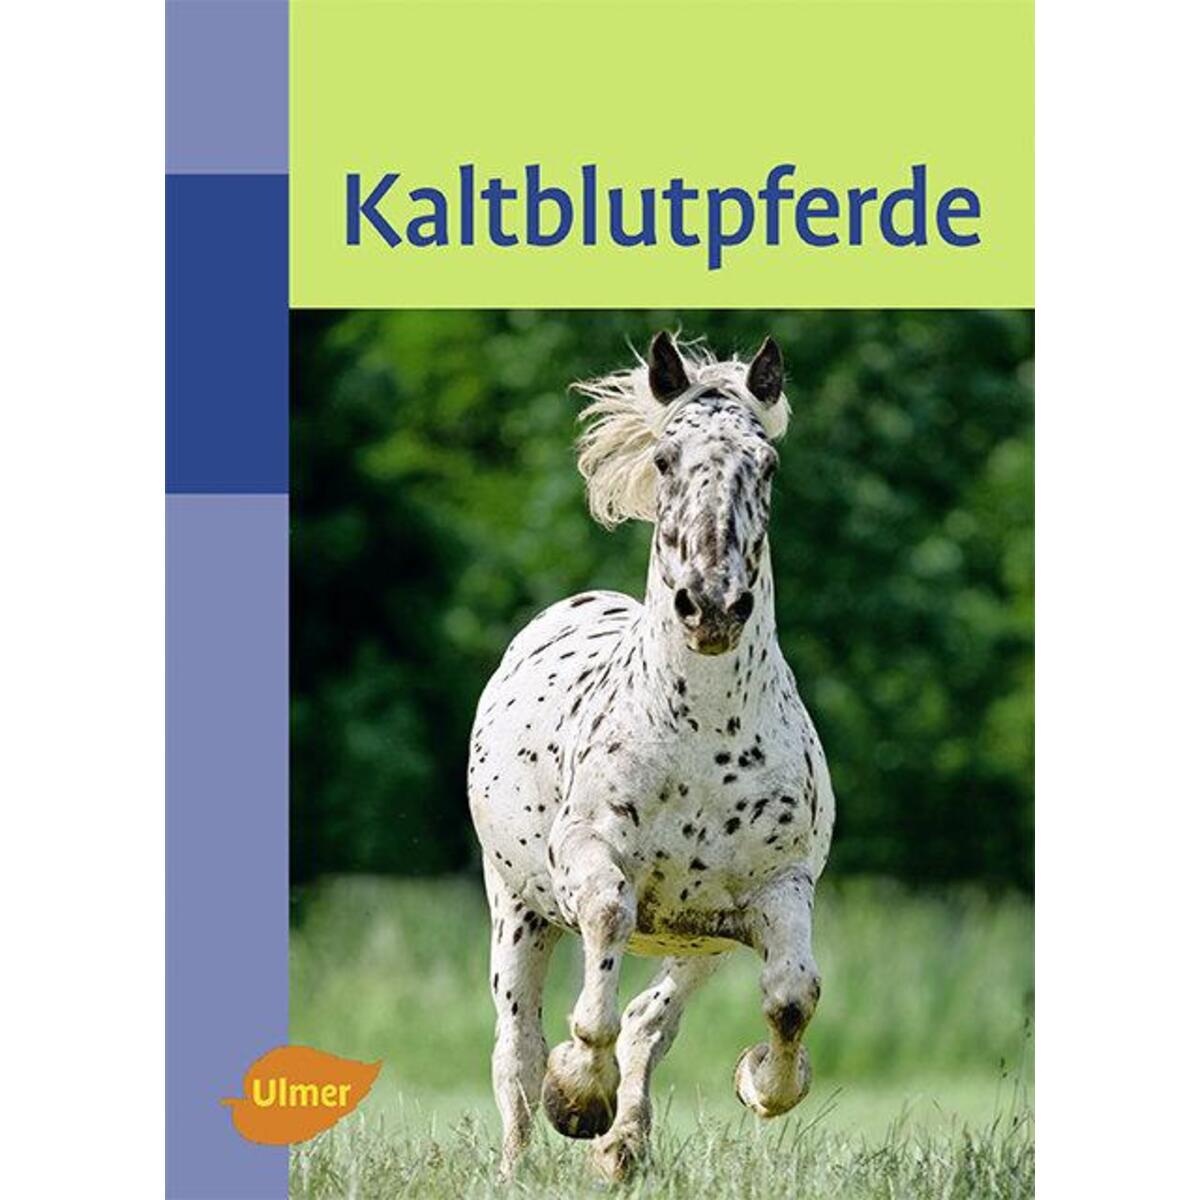 Kaltblutpferde von Ulmer Eugen Verlag